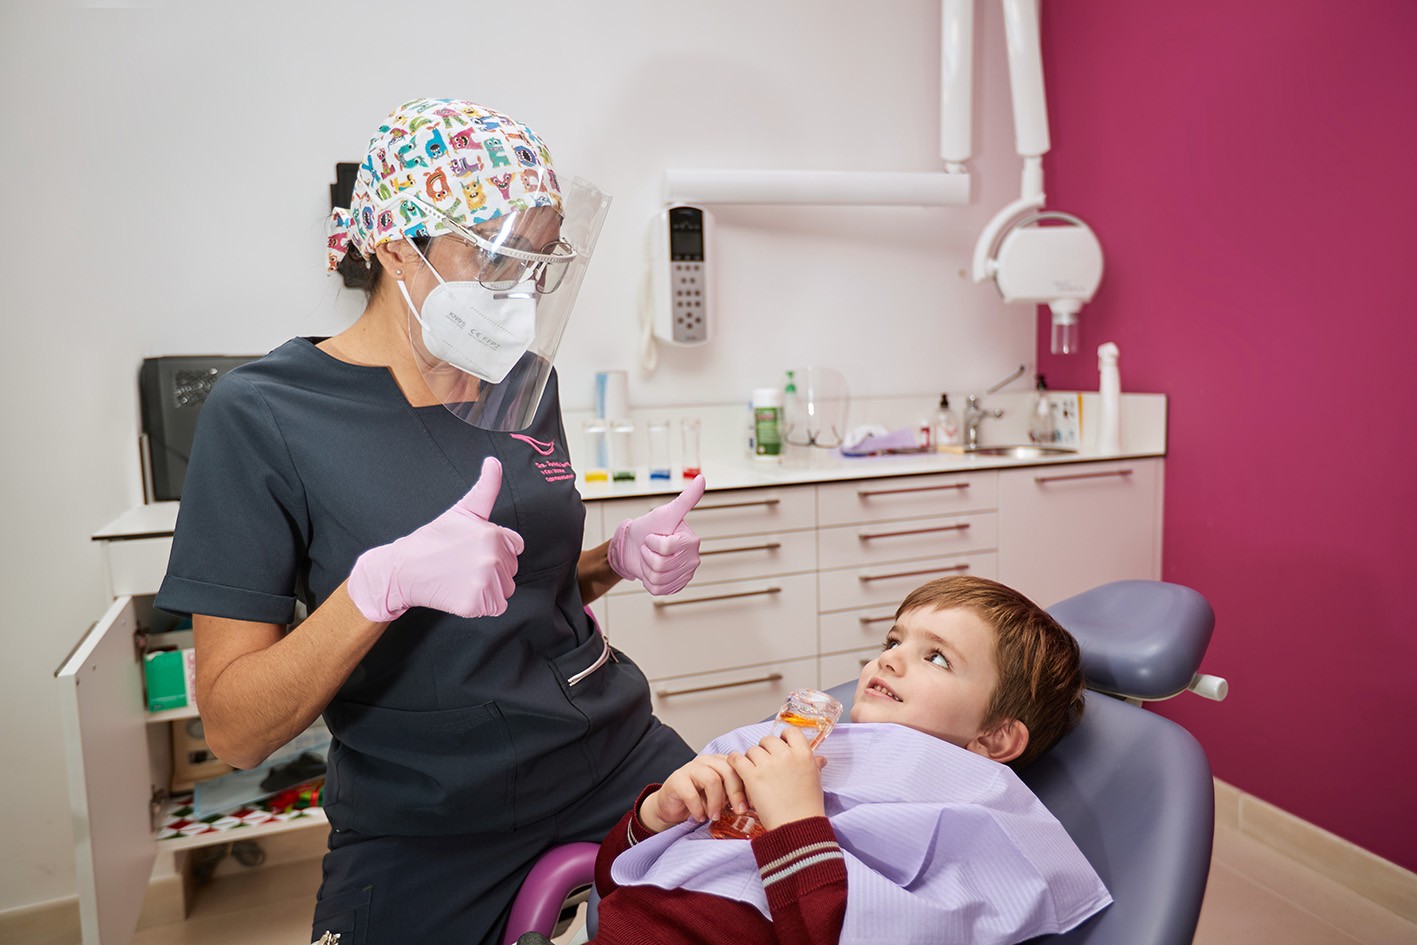 ODONTOPEDIATRÍA ESPECIALIZADA EN CLÍNICA DENTAL. ESPECIALISTAS EN REVISIONES INFANTILES Y TRATAMIENTOS DENTALES PARA NIÑOS Y JÓVENES. En Clinica Dental Esther Maján, disponemos de un área especializada de odontopediatría con odontólogos pediatras especializados en revisiones y todo tipo de tratamientos dentales para niños y jóvenes. En Clínica Dental Esther Maján, cuidamos de la salud dental de sus hijos mediante el control y la aplicación de las últimas tecnologías en el ámbito dental para los niños y jóvenes tengan sus dientes perfectos. En este sentido, además una salud bucal es un síntoma de una óptima salud general y para ello trabajan nuestros dentistas pedriatrícos. Consúltenos y estableceremos un protocolo a través de nuestros odontopediatras para evaluar y controlar el desarrollo de la dentadura de sus hijos y así evitar problemas futuros. CLINICAS-DENTALES-MOSTOLES-DENTISTAS-MÓSTOLES-TRATAMIENTOS-DENTALES-ECONOMICOS-TAC-DENTAL-BARATOS-DENTISTA-RECOMENDABLE-DE-CONFIANZA-PARQUE-COIMBRA-FAMILIAS-NUMEROSAS CLINICA DENTAL EN MOSTOLES – CLINICAS DENTALES EN MOSTOLES – DENTISTAS EN MOSTOLES – DENTISTA EN MOSTOLES – DENTISTA MOSTOLES – DENTISTAS MOSTOLES – DENTISTAS ECONOMICOS BARATOS EN MOSTOLES – CLINICAS DENTALES ECONOMICAS BARATAS EN MOSTOLES – DENTISTA CON BUENAS OPINIONES EN MOSTOLES – DENTISTAS CON BUENAS OPINIONES EN MOSTOLES – CLINICA DENTAL CON BUENAS OPINIONES EN MOSTOLES – CLINICAS DENTALES CON BUENAS OPINIONES EN MOSTOLES – CLÍNICA DENTAL EN MÓSTOLES – CLÍNICAS DENTALES EN MÓSTOLES – DENTISTAS EN MÓSTOLES – DENTISTA EN MÓSTOLES – DENTISTA MÓSTOLES – DENTISTAS MÓSTOLES – DENTISTAS ECONÓMICOS BARATOS EN MÓSTOLES – CLÍNICAS DENTALES ECONÓMICAS BARATAS EN MÓSTOLES – DENTISTA CON BUENAS OPINIONES EN MÓSTOLES – DENTISTAS CON BUENAS OPINIONES EN MÓSTOLES – CLÍNICA DENTAL CON BUENAS OPINIONES EN MÓSTOLES – CLÍNICAS DENTALES CON BUENAS OPINIONES EN MÓSTOLES – CLÍNICA DENTAL CON PRECIOS ESPECIALES, OFERTAS, PROMOCIOINES Y DESCUENTOS PARA FAMILIAS NUMEROSAS EN MOSTOLES (MADRID) – CLÍNICAS DENTALES CON PRECIOS ESPECIALES, OFERTAS, PROMOCIONES Y DESCUENTOS PARA FAMILIAS NUMEROSAS EN MÓSTOLES (MADRID). DENTISTAS EN MOSTOLES – DENTISTA EN MOSTOLES – DENTISTA MOSTOLES – DENTISTAS MOSTOLES – DENTISTAS ECONOMICOS BARATOS EN MOSTOLES – CLINICAS DENTALES ECONOMICAS BARATAS EN MOSTOLES – ORTODONCISTA EN MOSTOLES – ORTODONCISTAS EN MOSTOLES – BUEN DENTISTA EN MOSTOLES – BUENA CLINICA DENTAL EN MOSTOLES – DENTISTA RECOMENDABLE EN MOSTOLES – DENTISTAS RECOMENDABLES EN MOSTOLES – CLÍNICA DENTAL EN MÓSTOLES – CÍINICAS DENTALES EN MÓSTOLES – DENTISTAS EN MÓSTOLES – DENTISTA EN MÓSTOLES – DENTISTA MÓSTOLES – DENTISTAS MÓSTOLES – DENTISTAS ECONÓMICOS BARATOS EN MÓSTOLES – CLÍNICAS DENTALES ECONÓMICAS BARATAS EN MÓSTOLES – ORTODONCISTA EN MÓSTOLES – ORTODONCISTAS EN MÓSTOLES – BUEN DENTISTA EN MÓSTOLES – BUENA CLÍNICA DENTAL EN MÓSTOLES – DENTISTA RECOMENDABLE EN MÓSTOLES – DENTISTAS RECOMENDABLES EN MÓSTOLES – DENTISTAS CON PRECIOS ESPECIALES, OFERTAS, PROMOCIOINES Y DESCUENTOS PARA FAMILIAS NUMEROSAS EN MOSTOLES (MADRID) – DENTISTA CON PRECIOS ESPECIALES, OFERTAS, PROMOCIONES Y DESCUENTOS PARA FAMILIAS NUMEROSAS EN MÓSTOLES (MADRID).